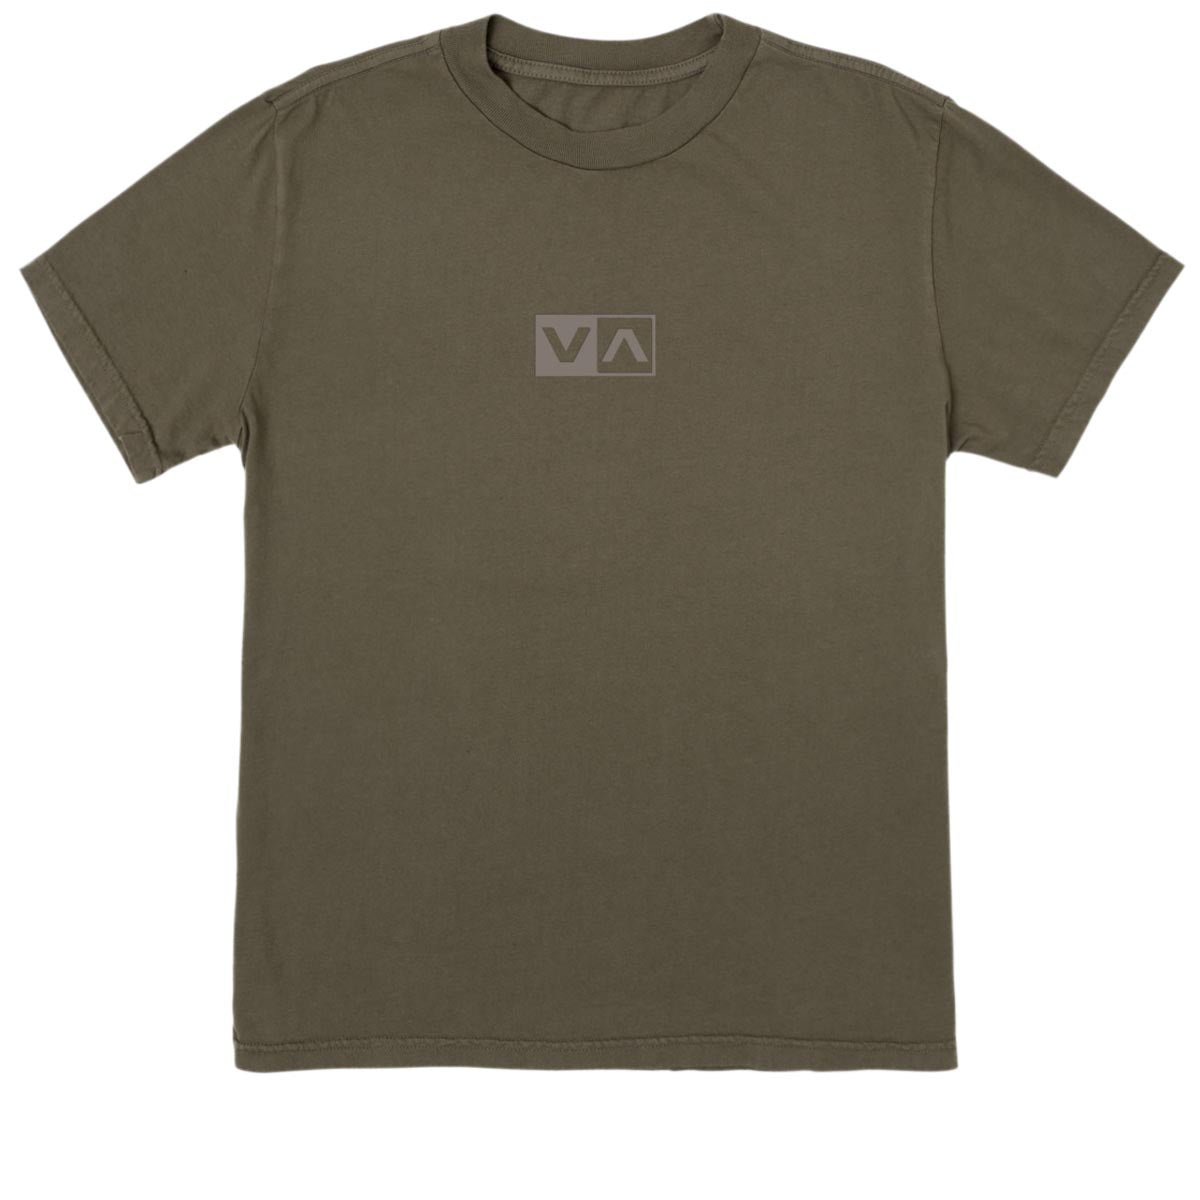 RVCA Lil Balance T-Shirt - Mushroom image 1